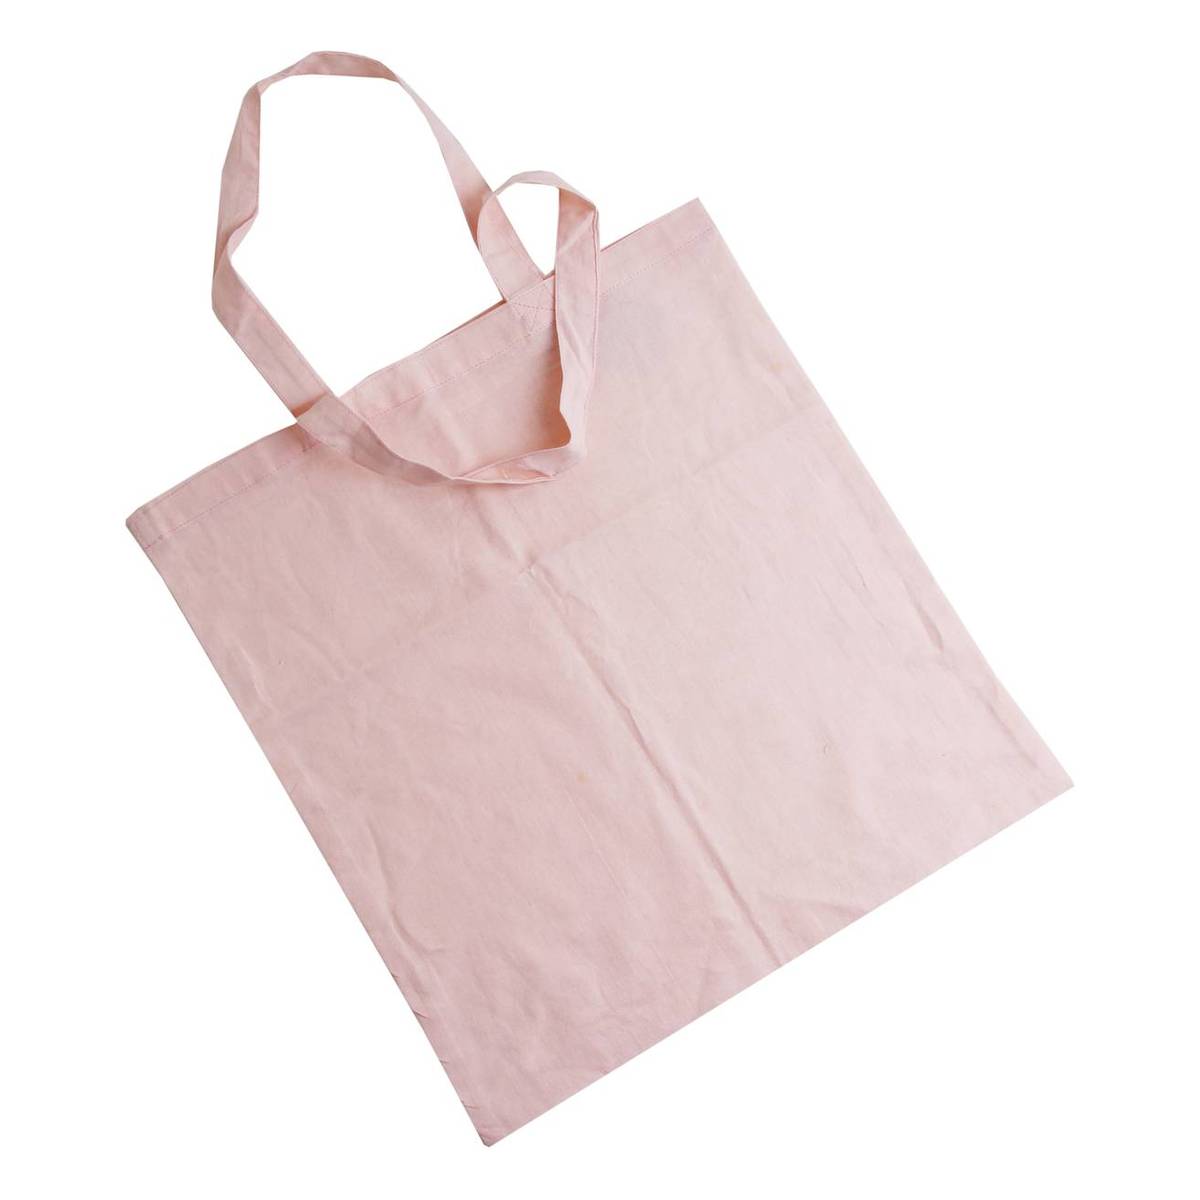 Buy Light Pink Cotton Shopping Bag 40cm x 38cm for GBP 2.50 | Hobbycraft UK